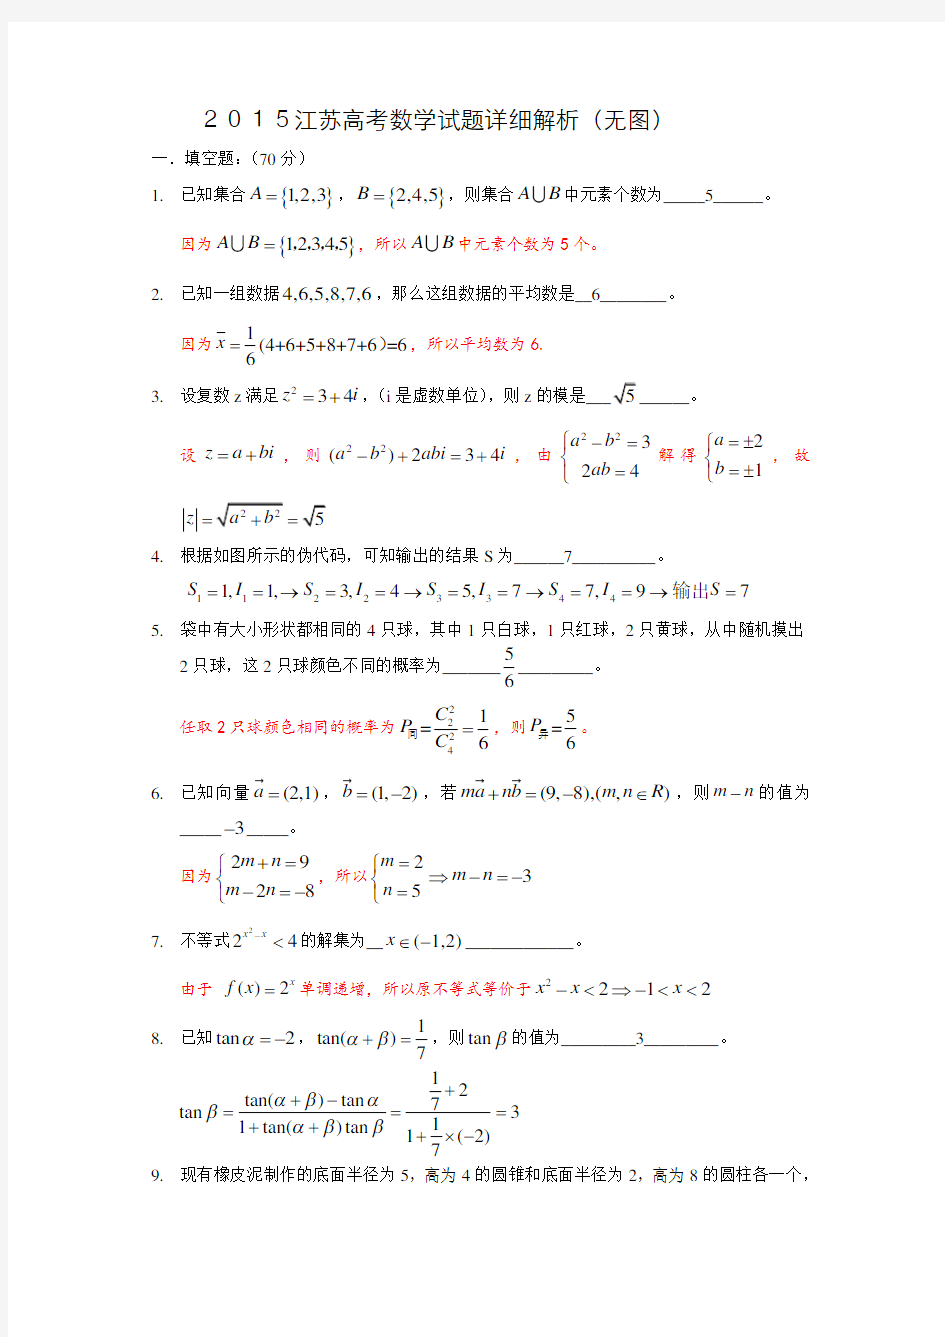 2015江苏高考数学试题详细解析